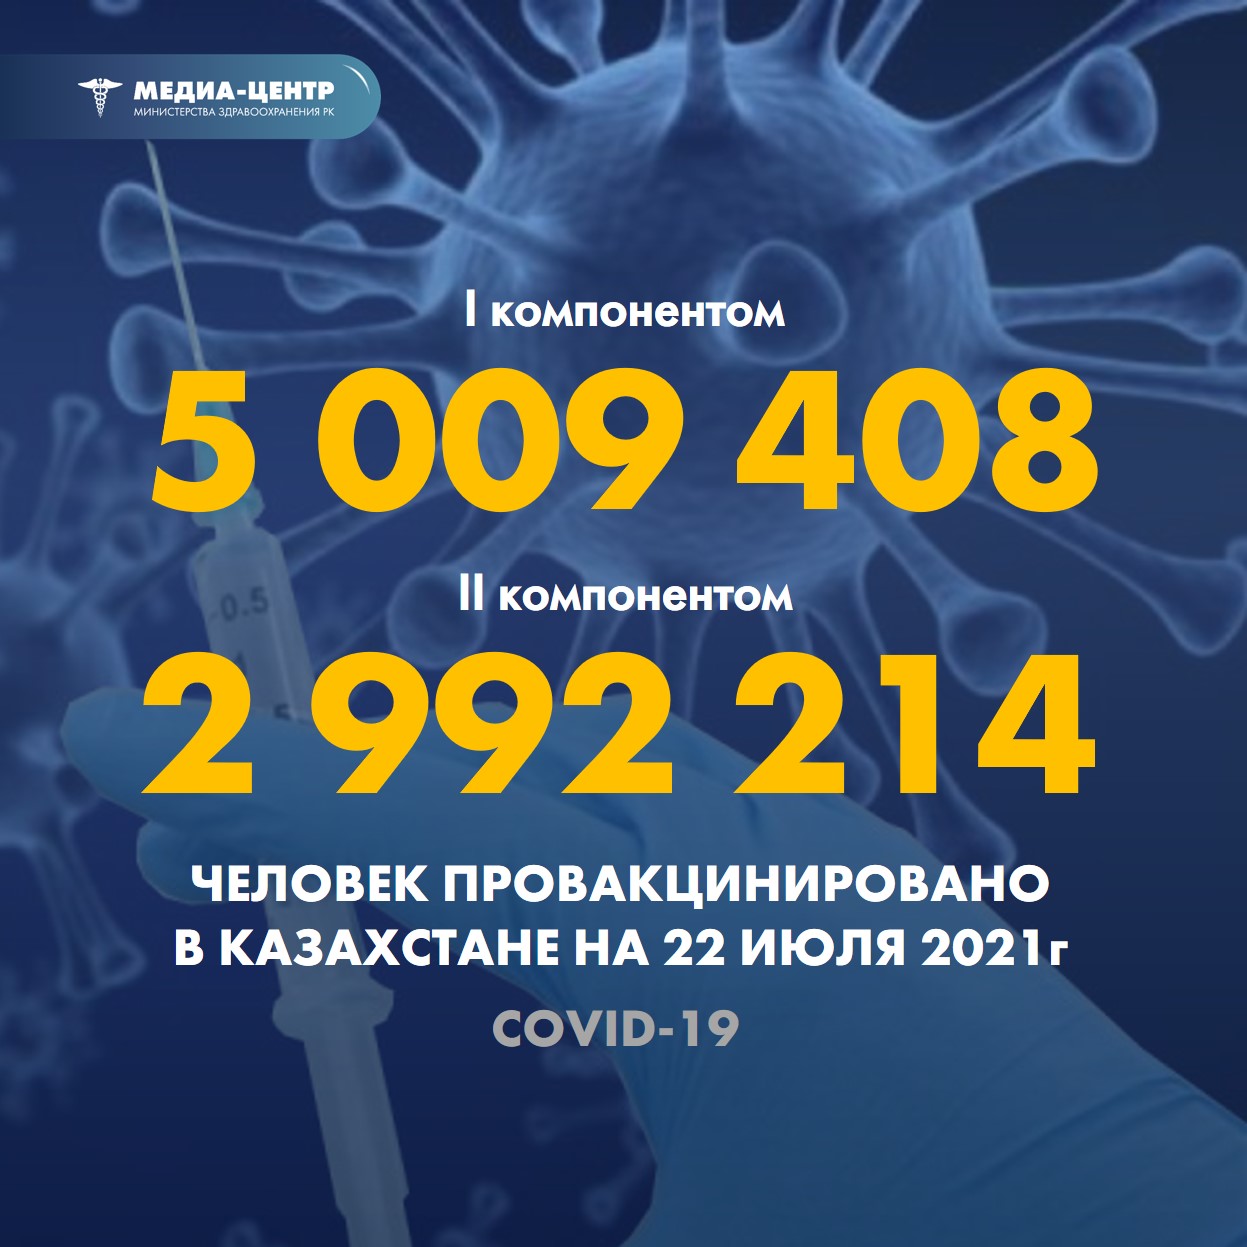 I компонентом 5 009 408 человек провакцинировано в Казахстане на 22 июля 2021 г, II компонентом 2 992 214 человек.